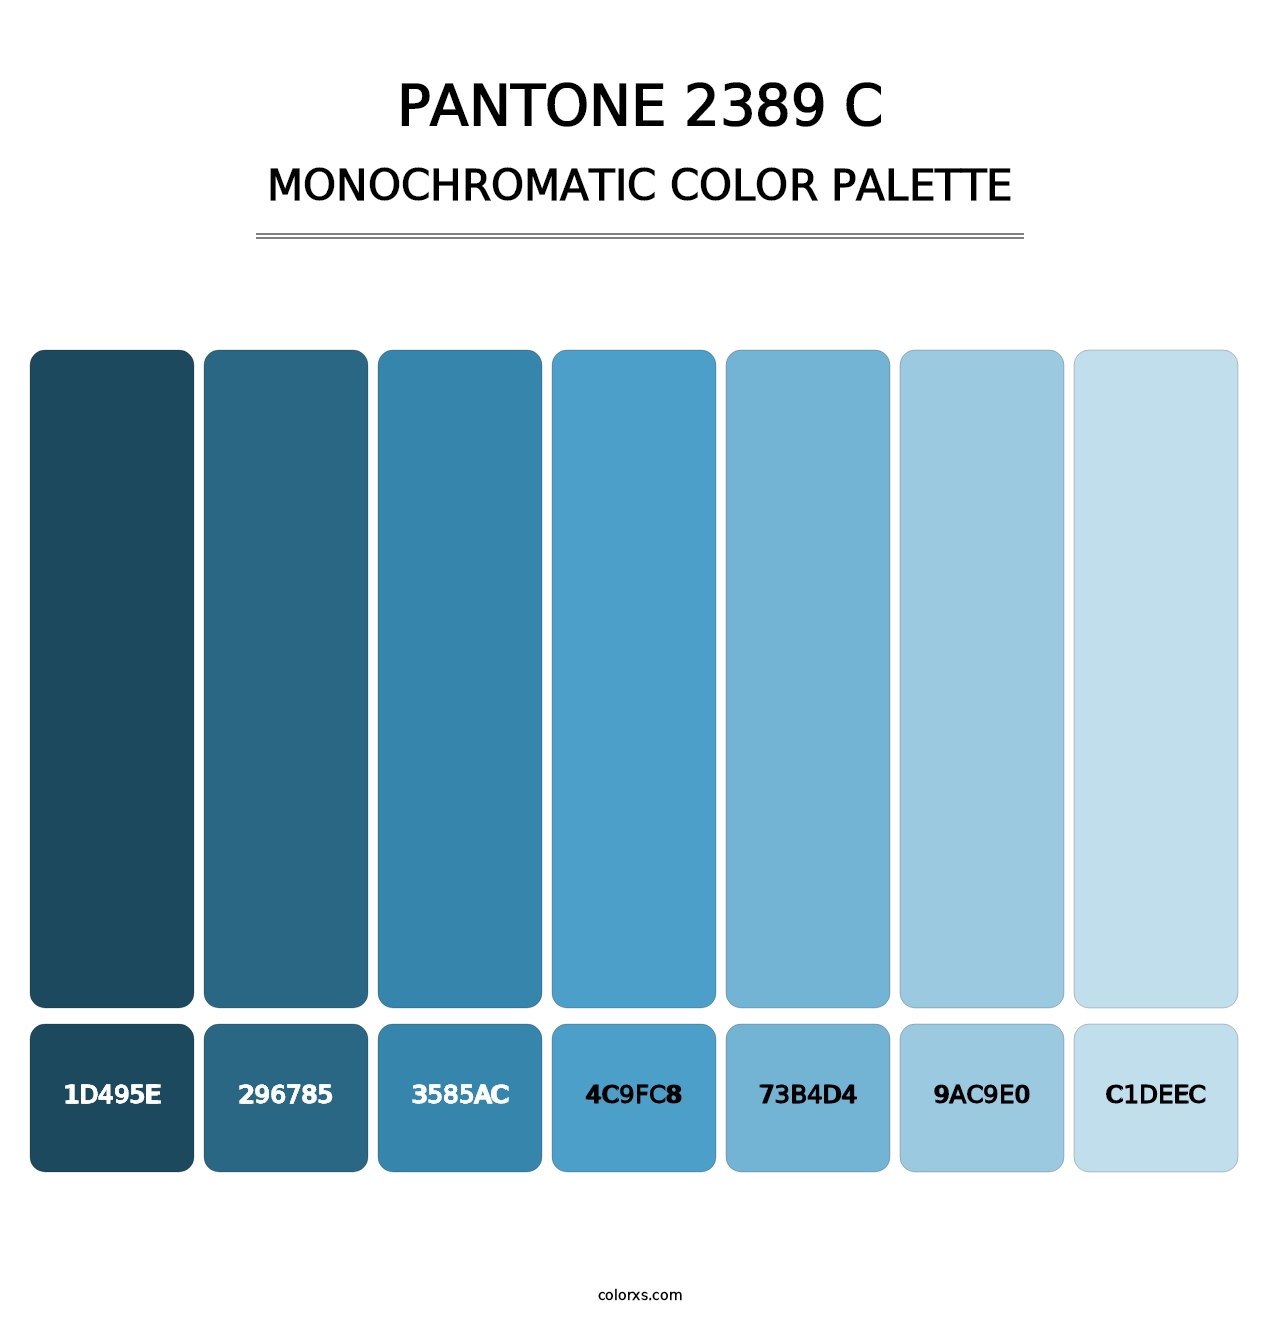 PANTONE 2389 C - Monochromatic Color Palette